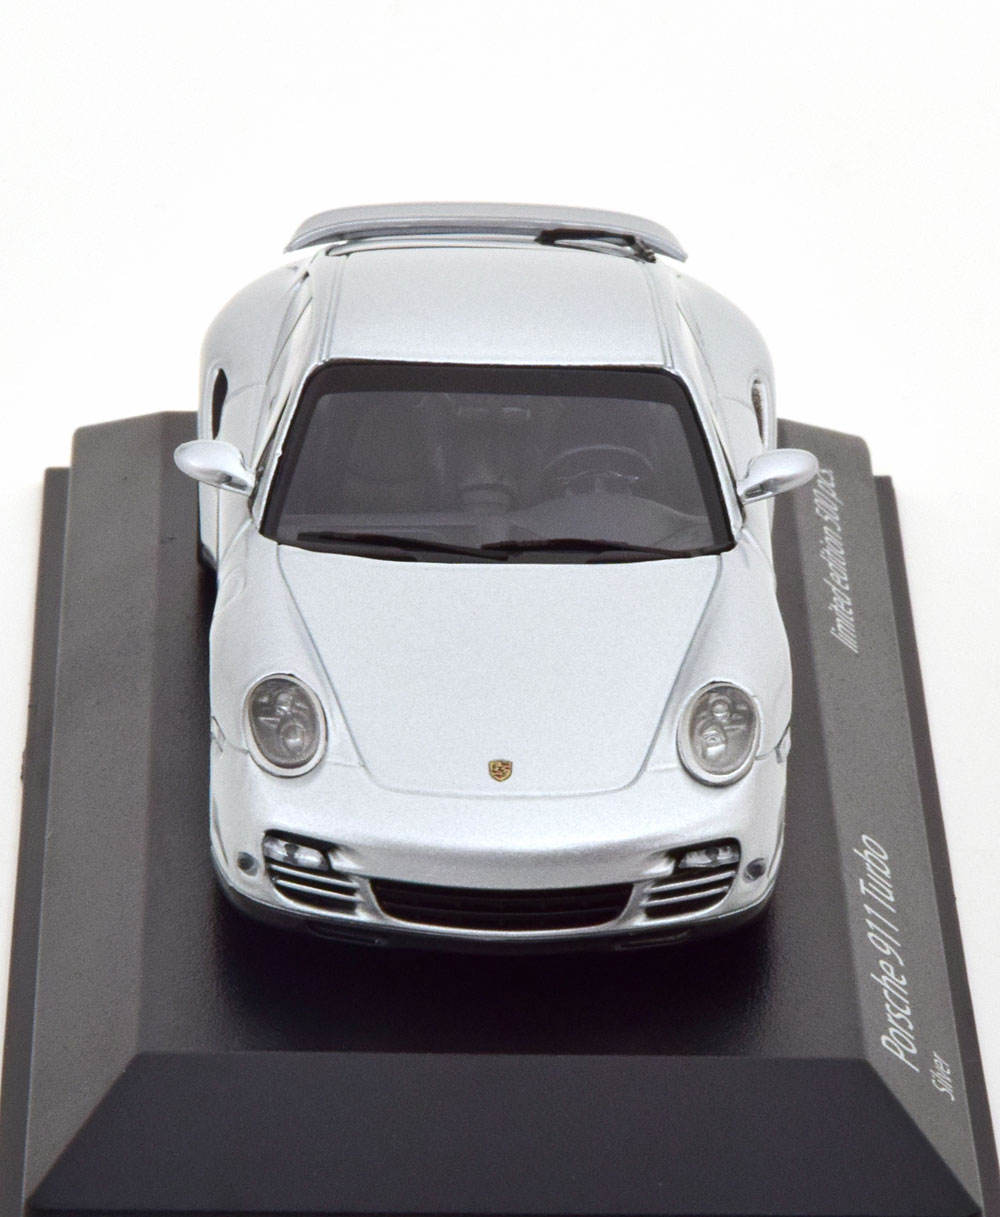 1:43 Minichamps Porsche 911 (997 II) Turbo Coupe 2009 silver